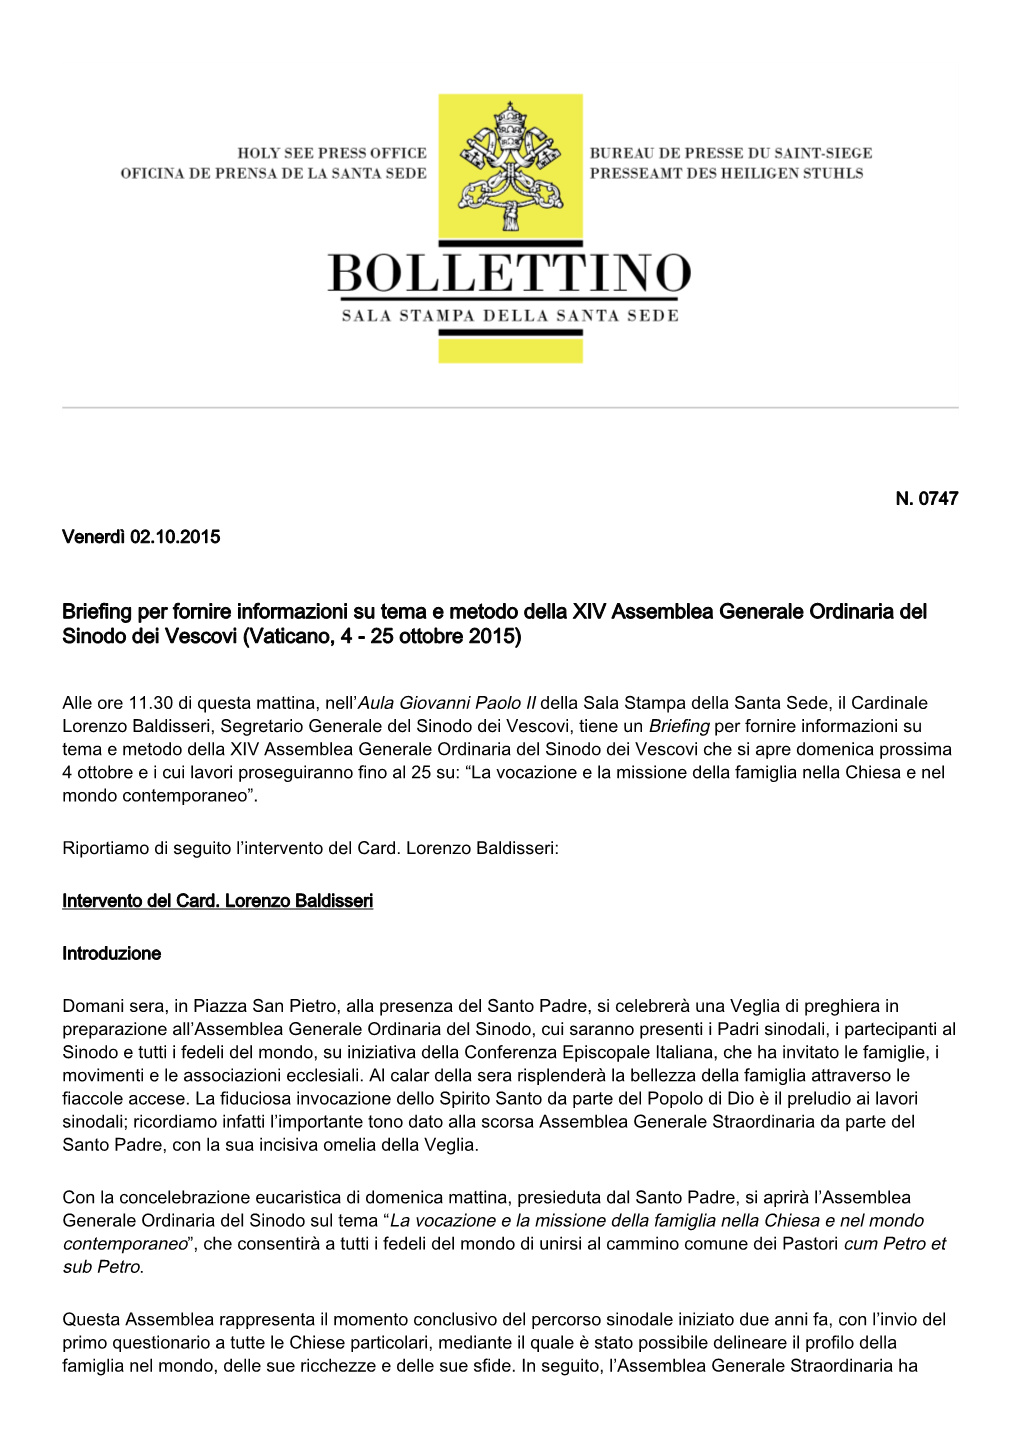 Briefing Per Fornire Informazioni Su Tema E Metodo Della XIV Assemblea Generale Ordinaria Del Sinodo Dei Vescovi (Vaticano, 4 - 25 Ottobre 2015)